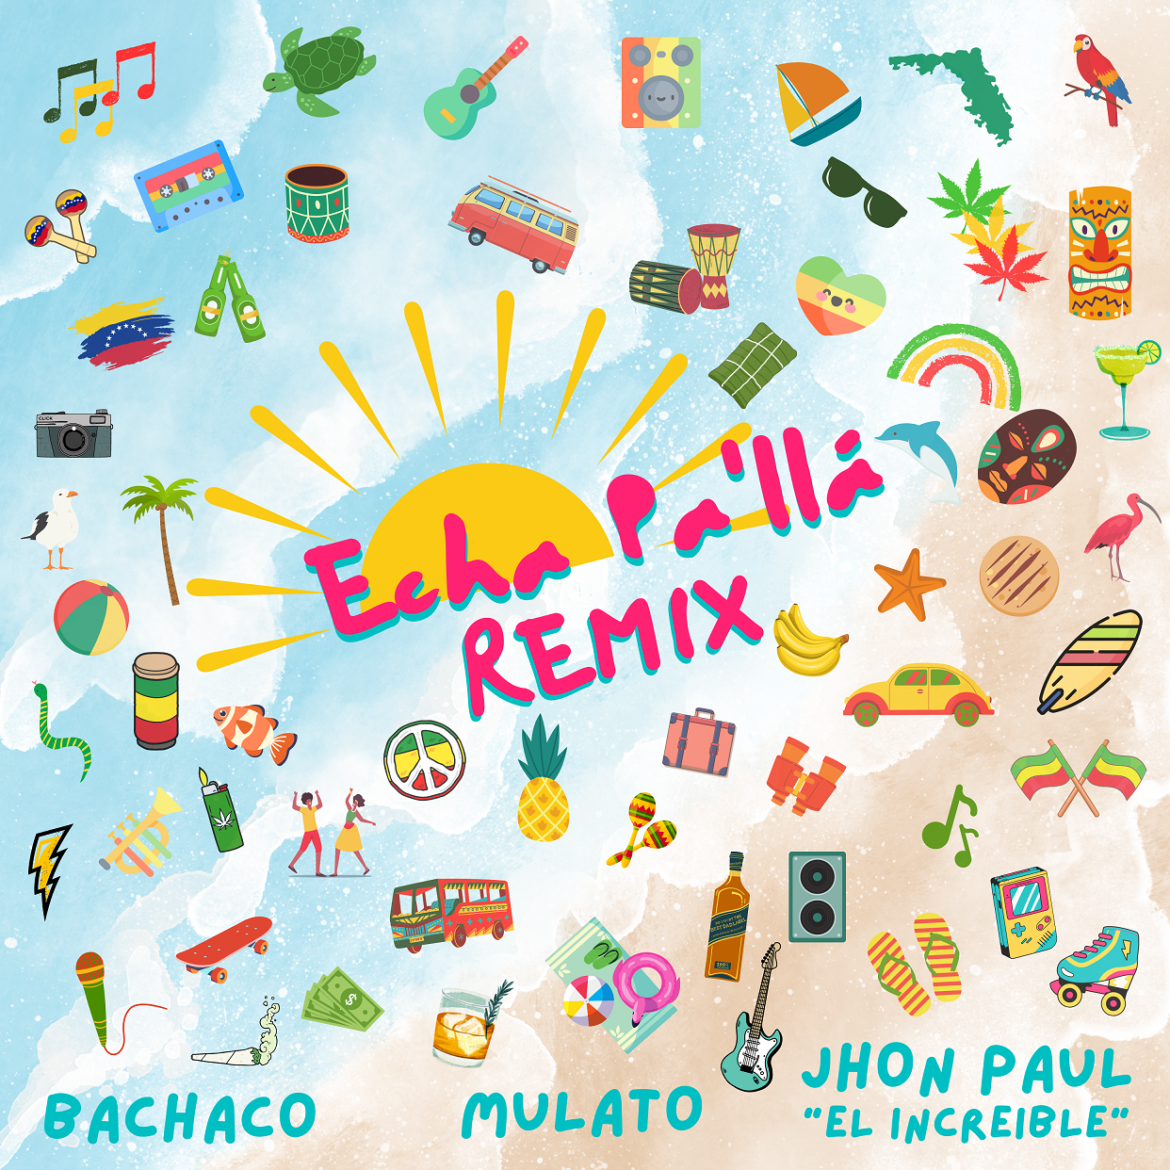 Bachaco se une a Mulato y Jhon Paul “El Increíble” para traer de vuelta el éxito “Echa pa´ llá remix”